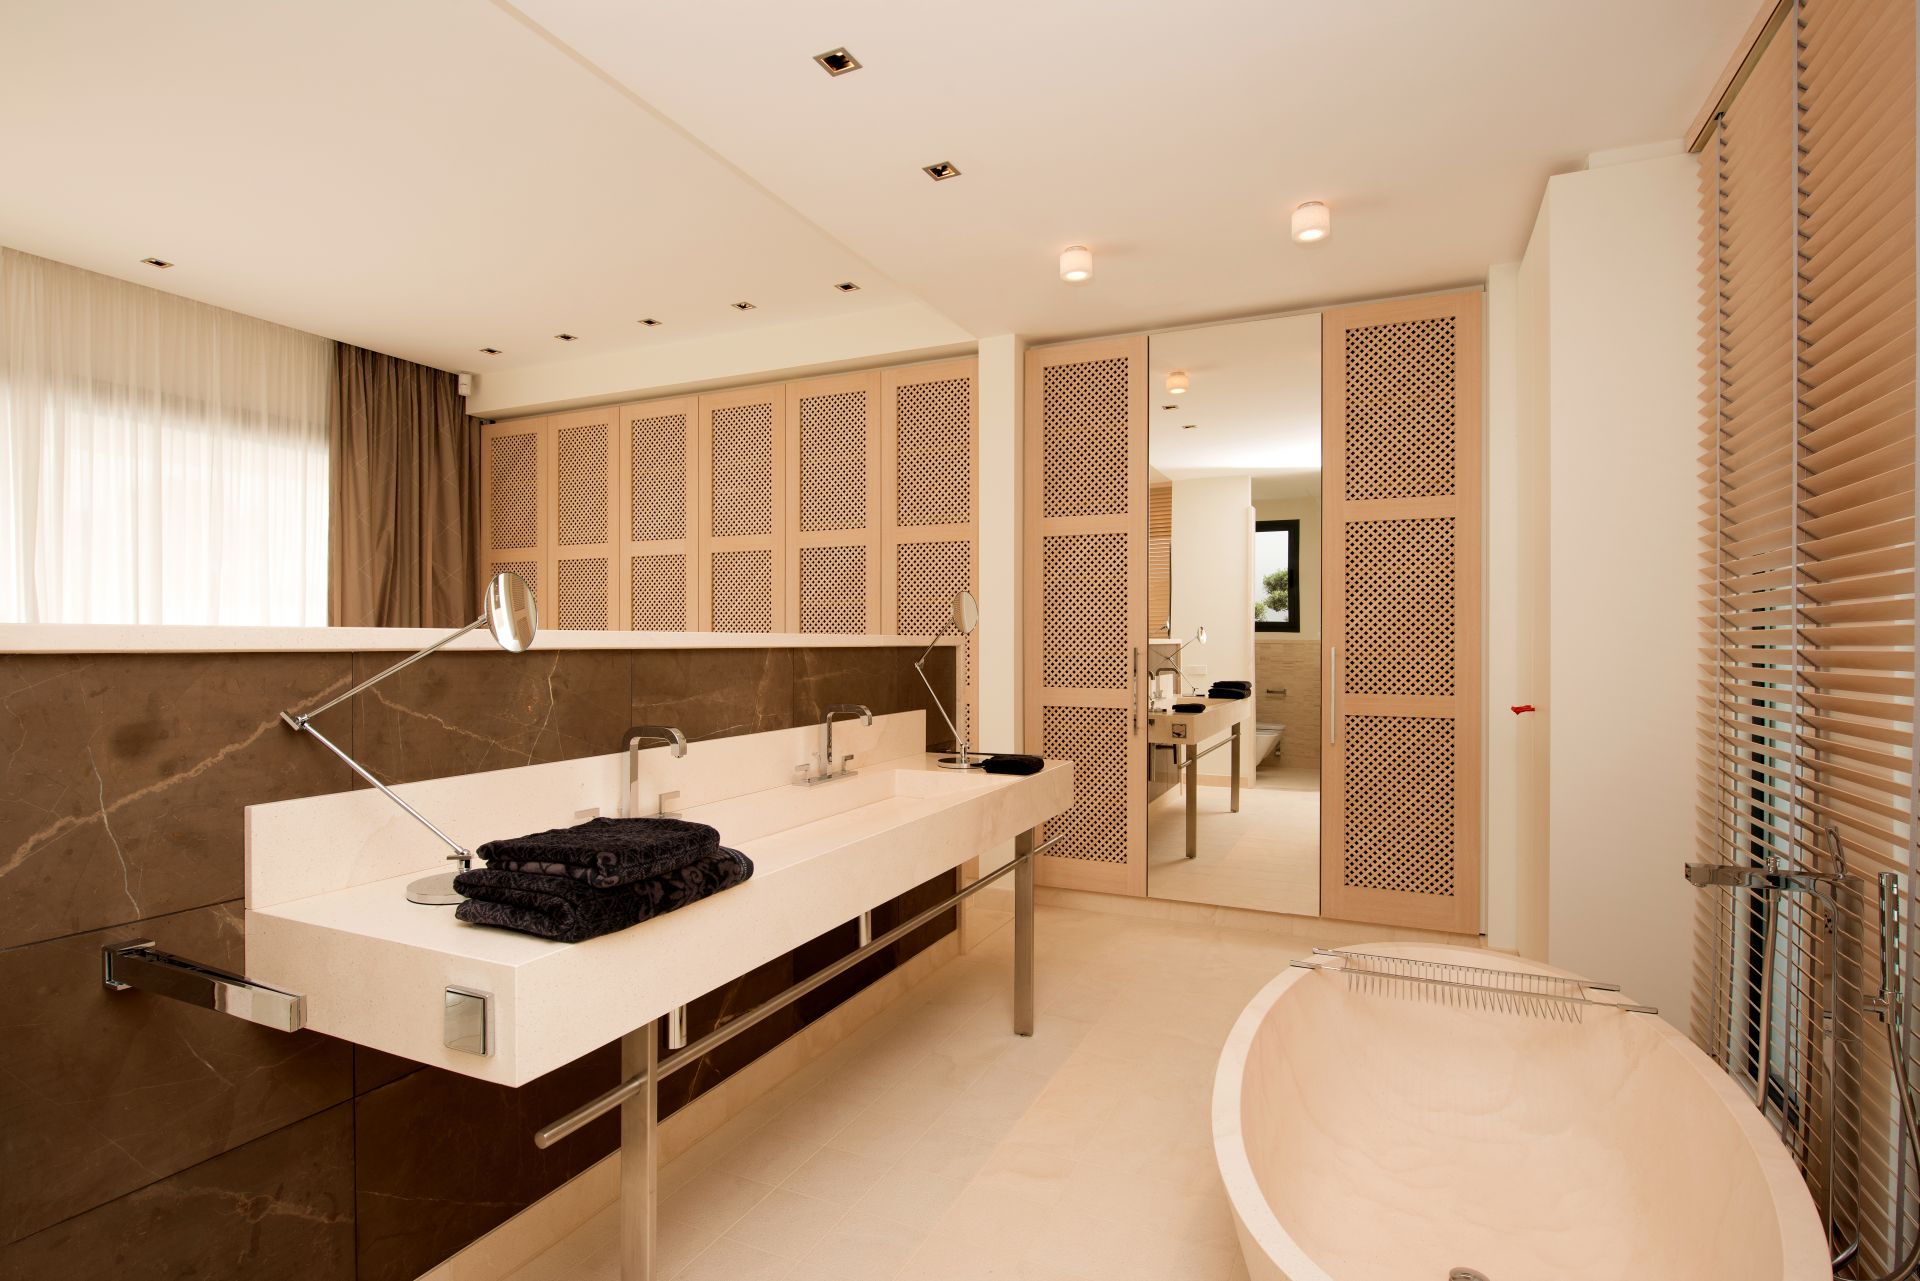 Moderne luxe villa in Ibiza begeerde schikking Vista Alegre